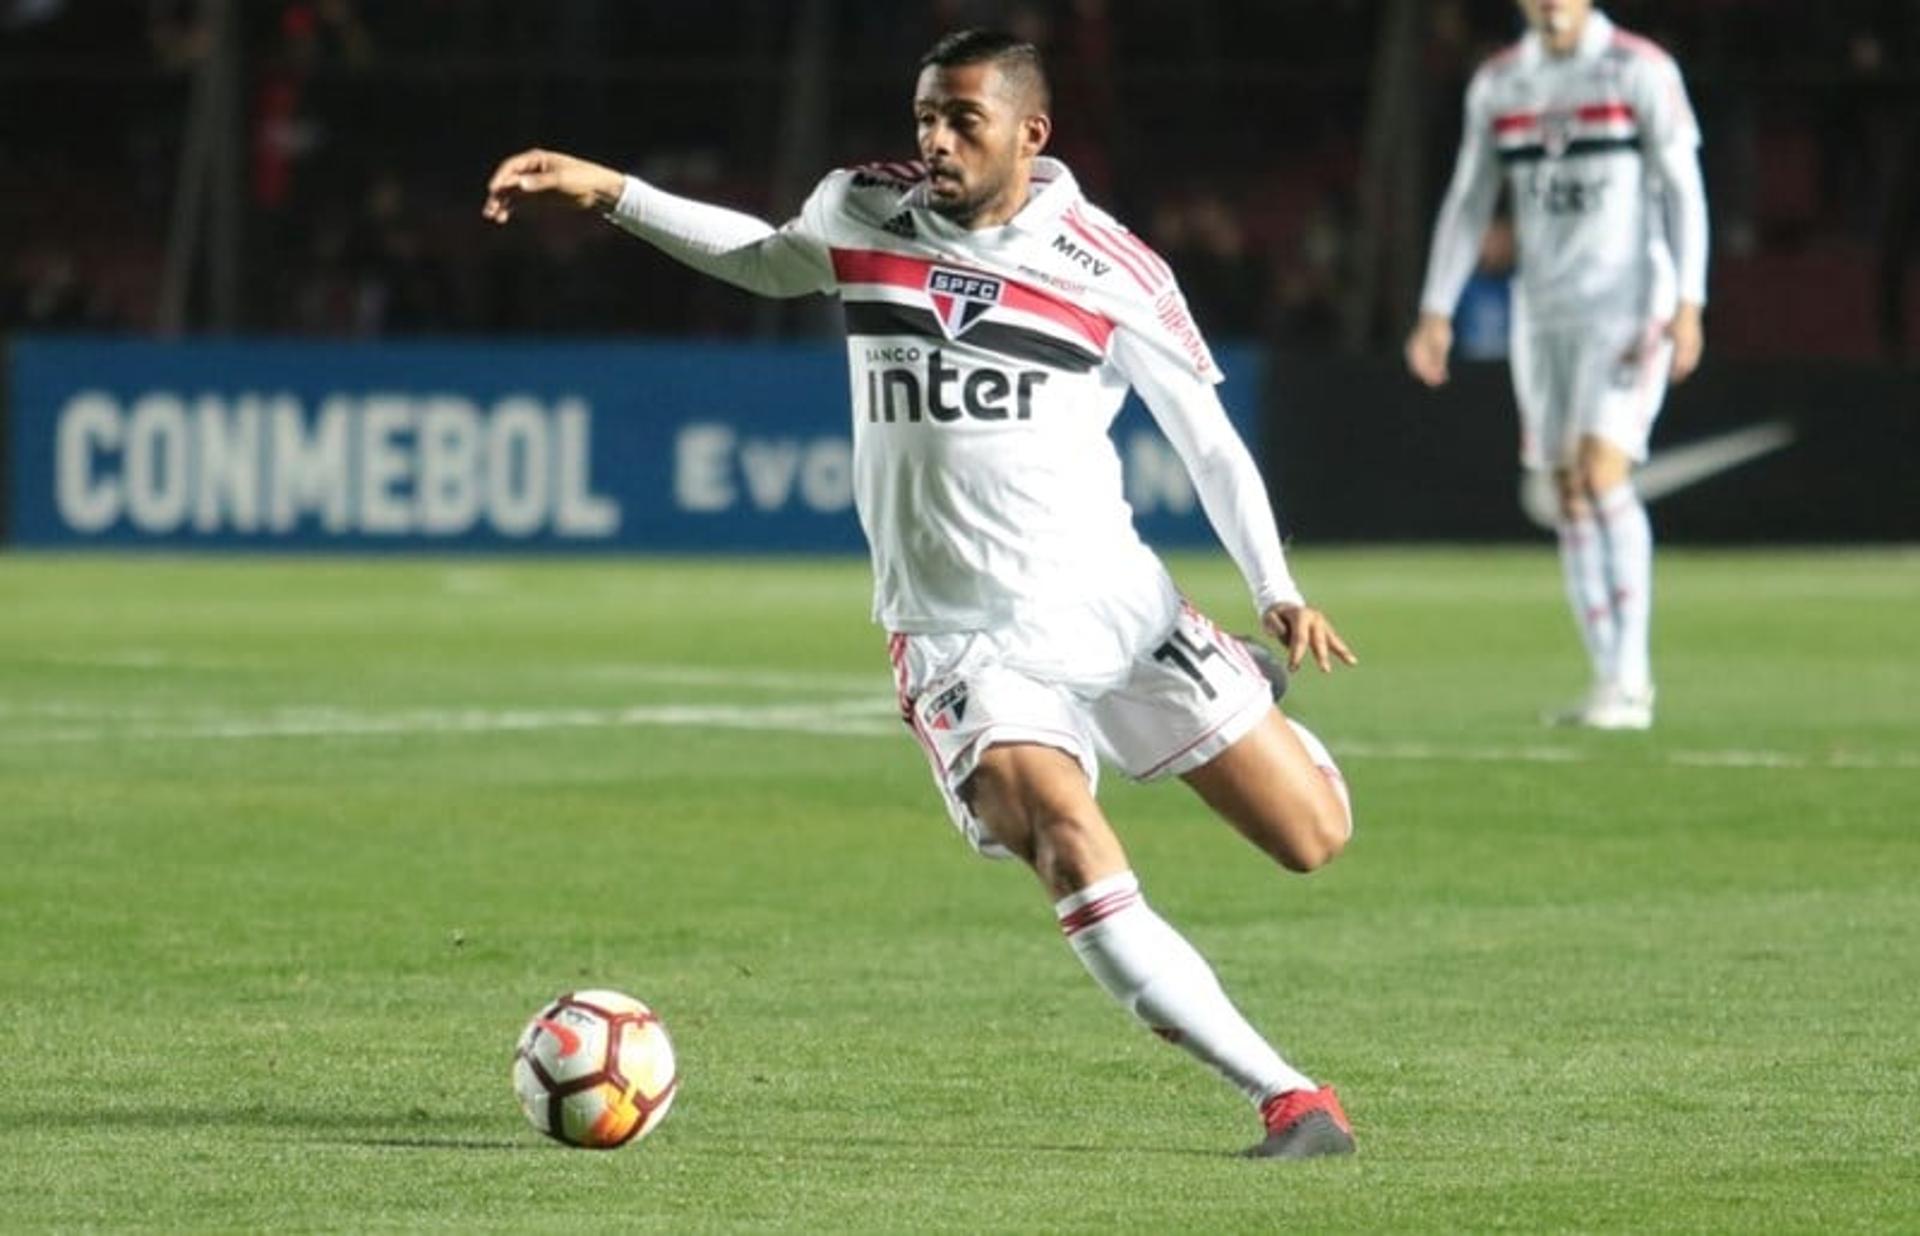 Lateral Reinaldo comentou sobre a frustração de ser eliminado da Copa Sul-Americana